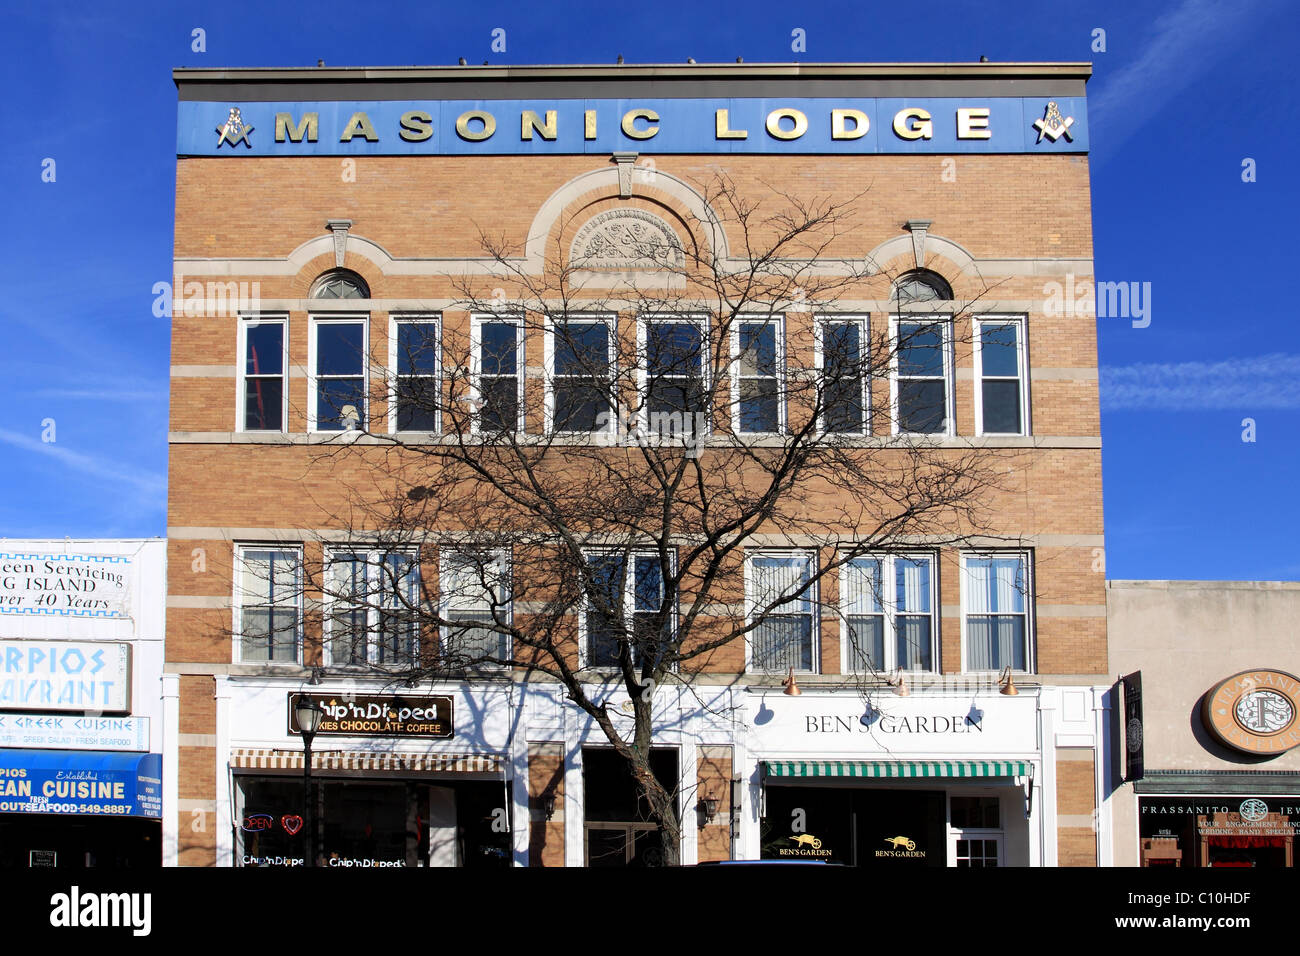 Masonic Lodge, Route 110, Huntington, Long Island NY Stock Photo